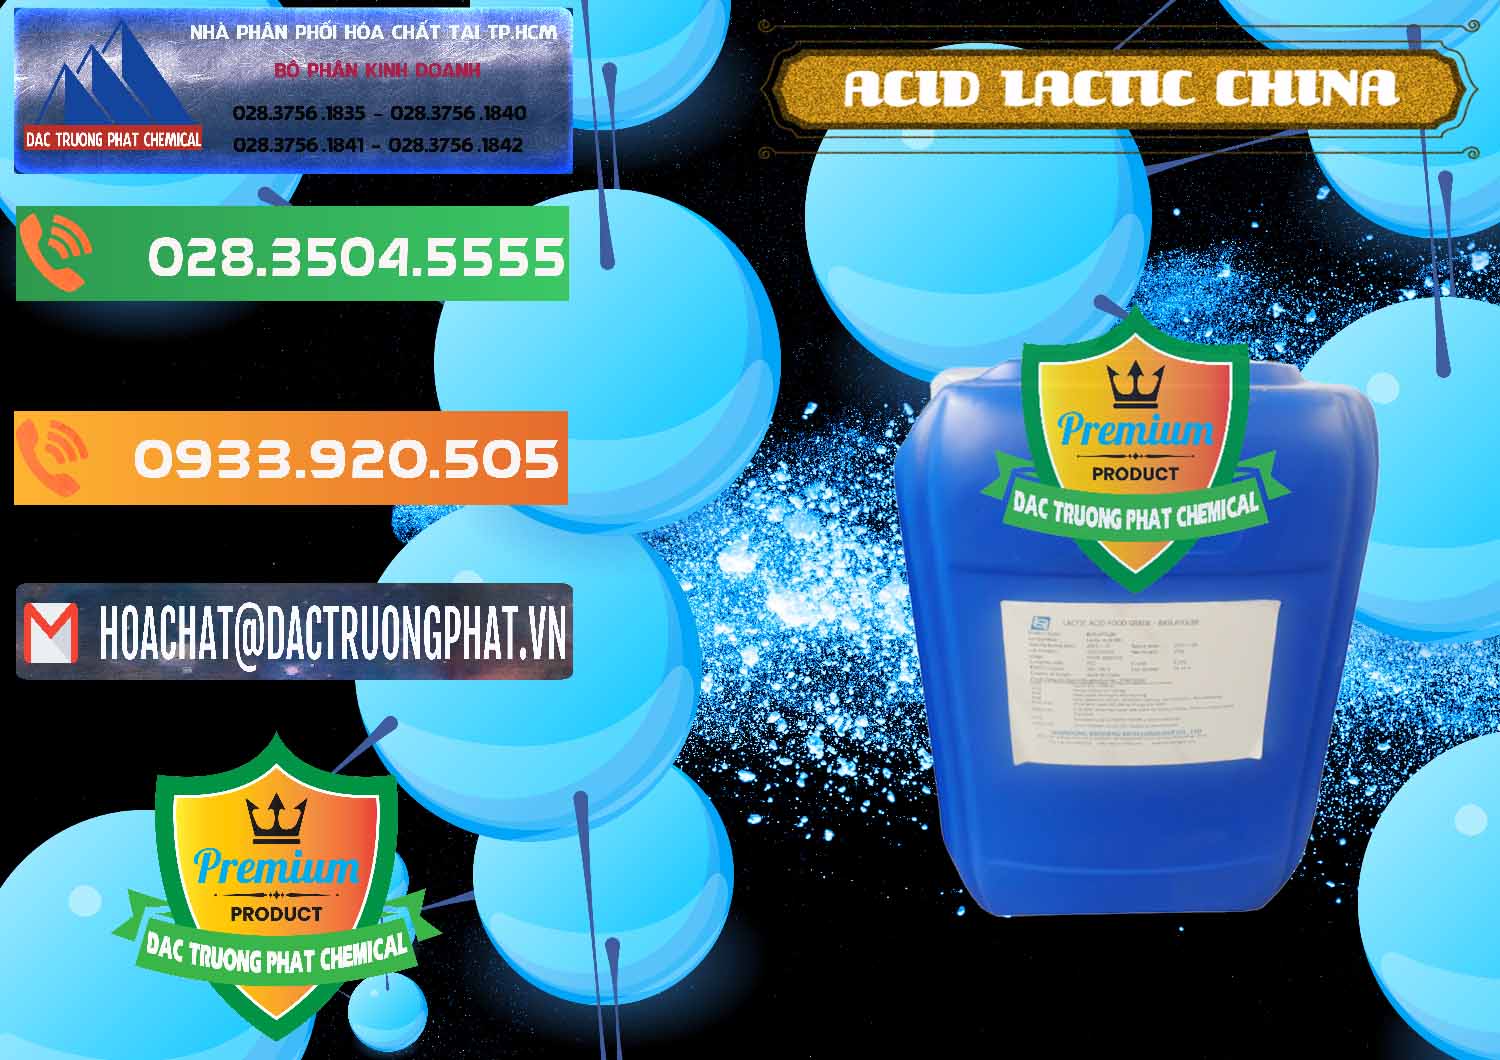 Cung cấp - bán Acid Lactic – Axit Lactic Trung Quốc China - 0374 - Phân phối _ cung cấp hóa chất tại TP.HCM - hoachatxulynuoc.com.vn